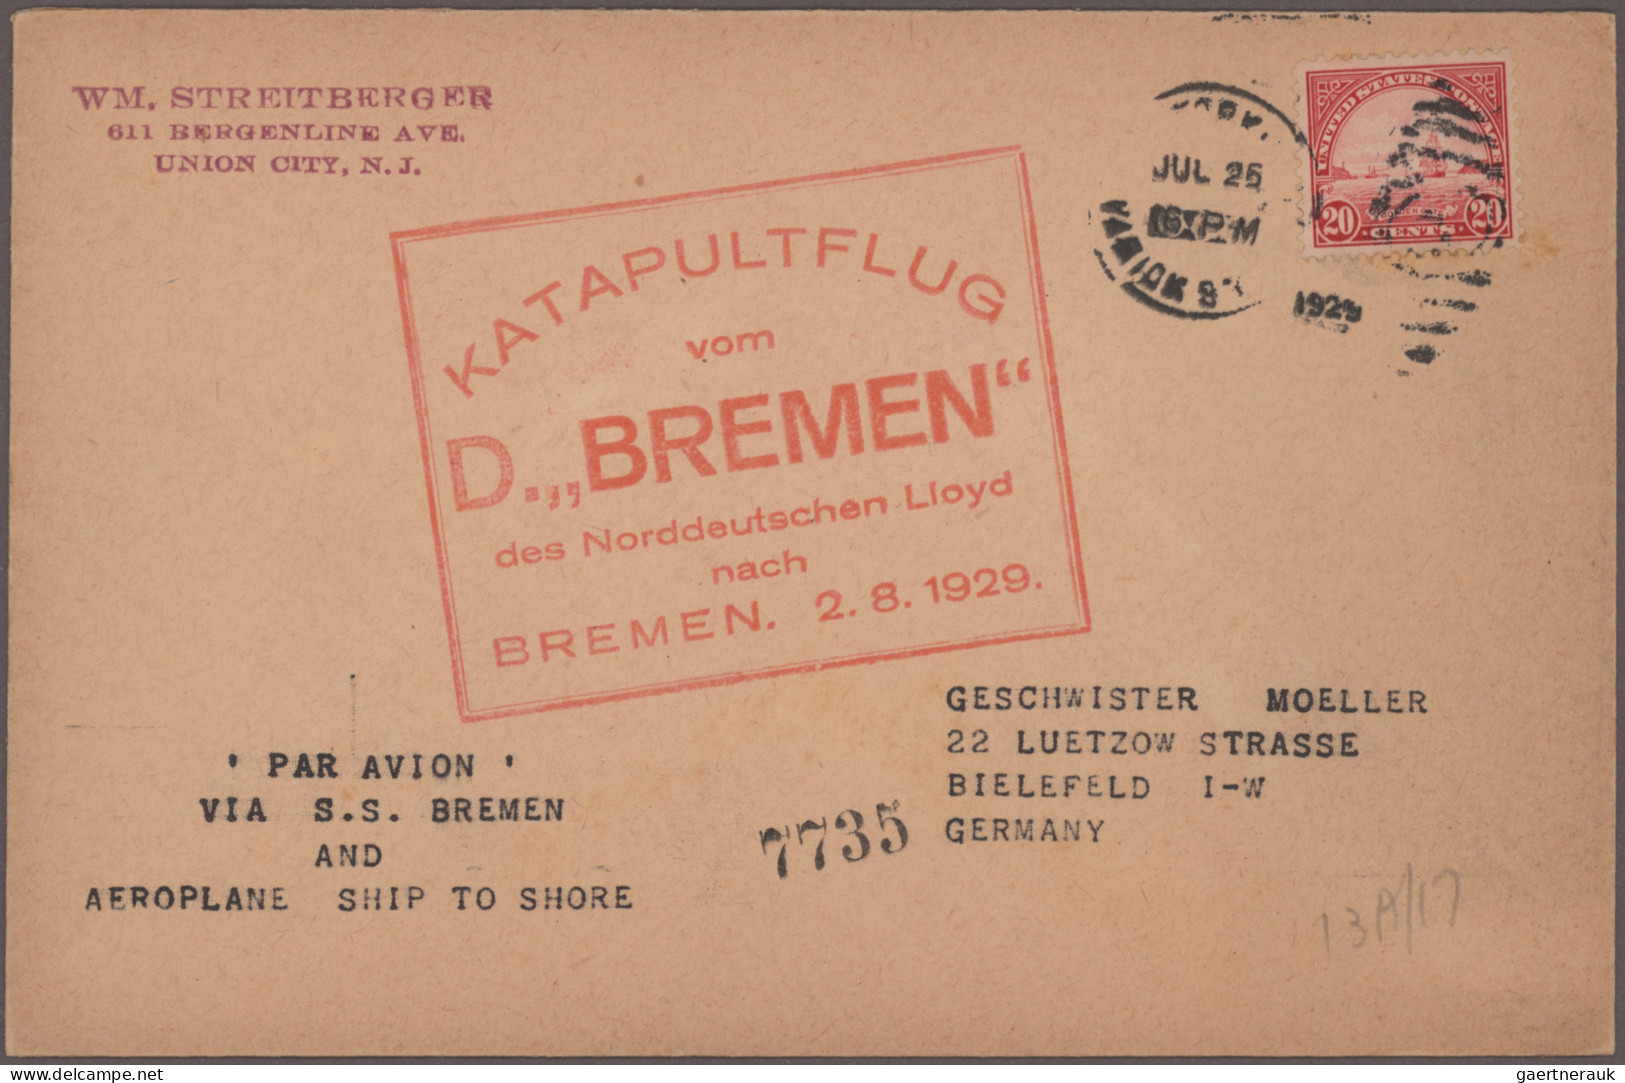 Deutsches Reich: 1872/1945, umfangreiche Partie in beiden Erhaltungen, in 4 Stec